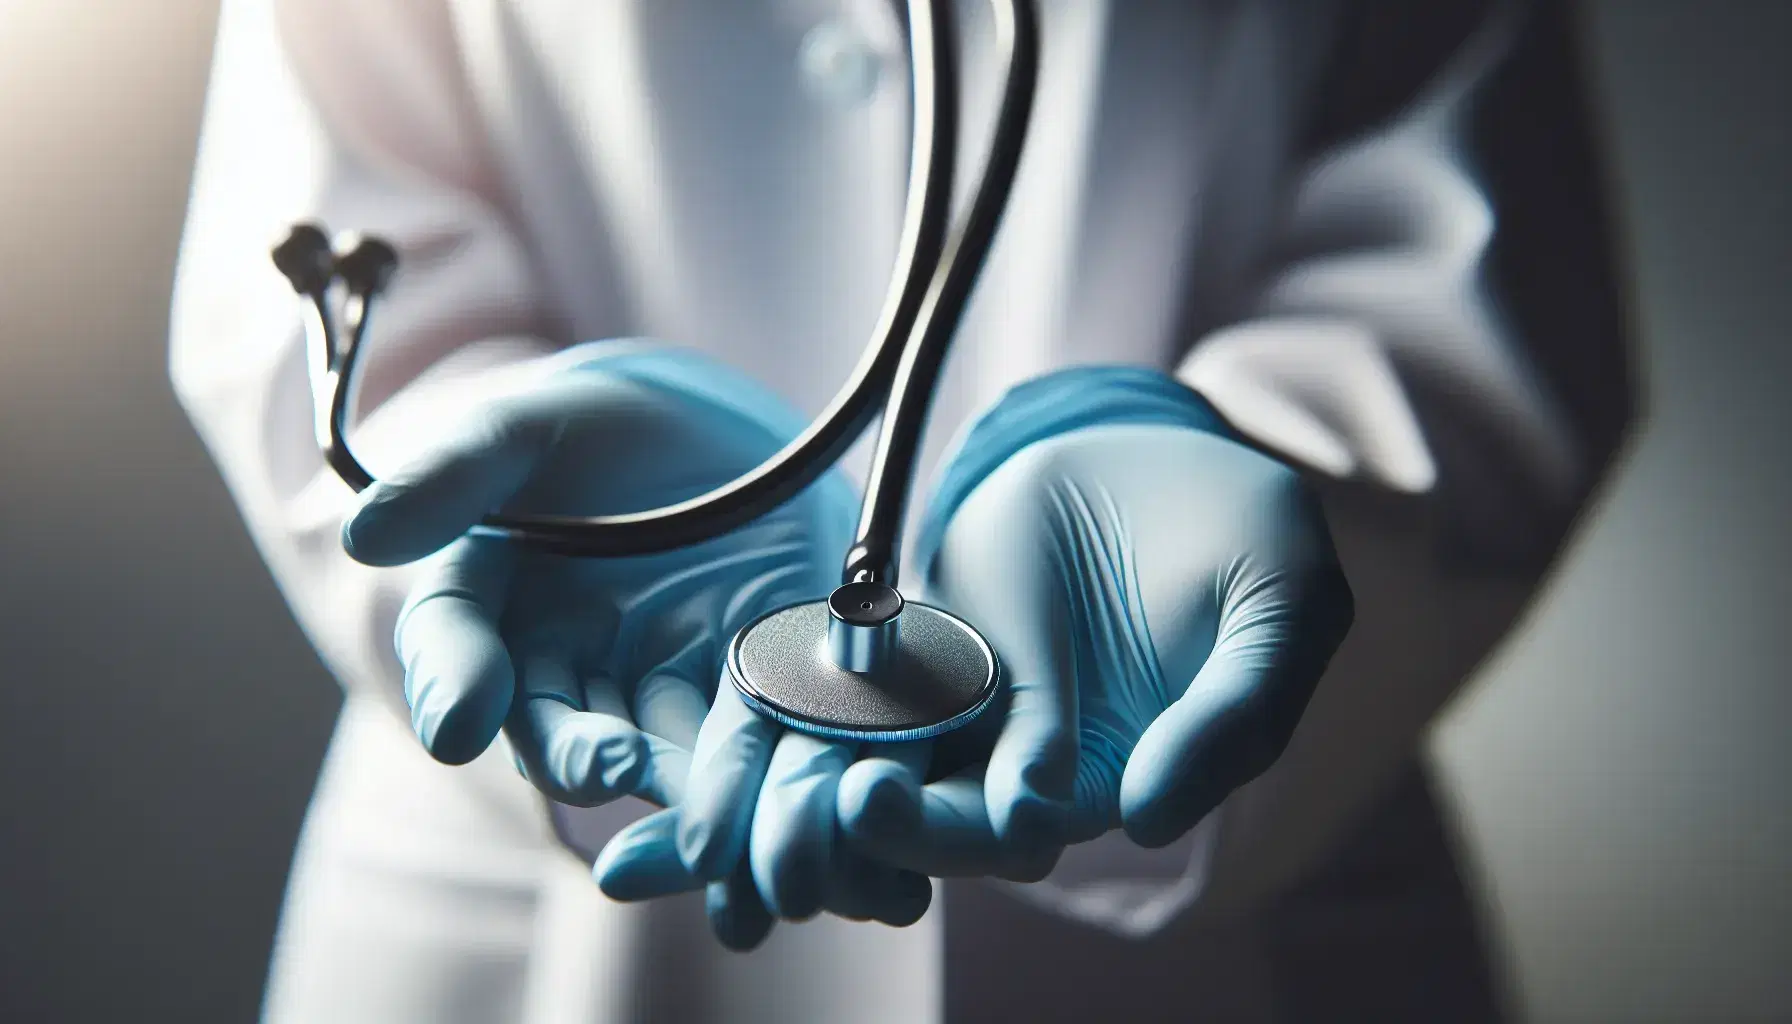 Manos de enfermera con guantes azules sosteniendo un estetoscopio listo para uso, con fondo desenfocado de uniforme blanco y luz suave.